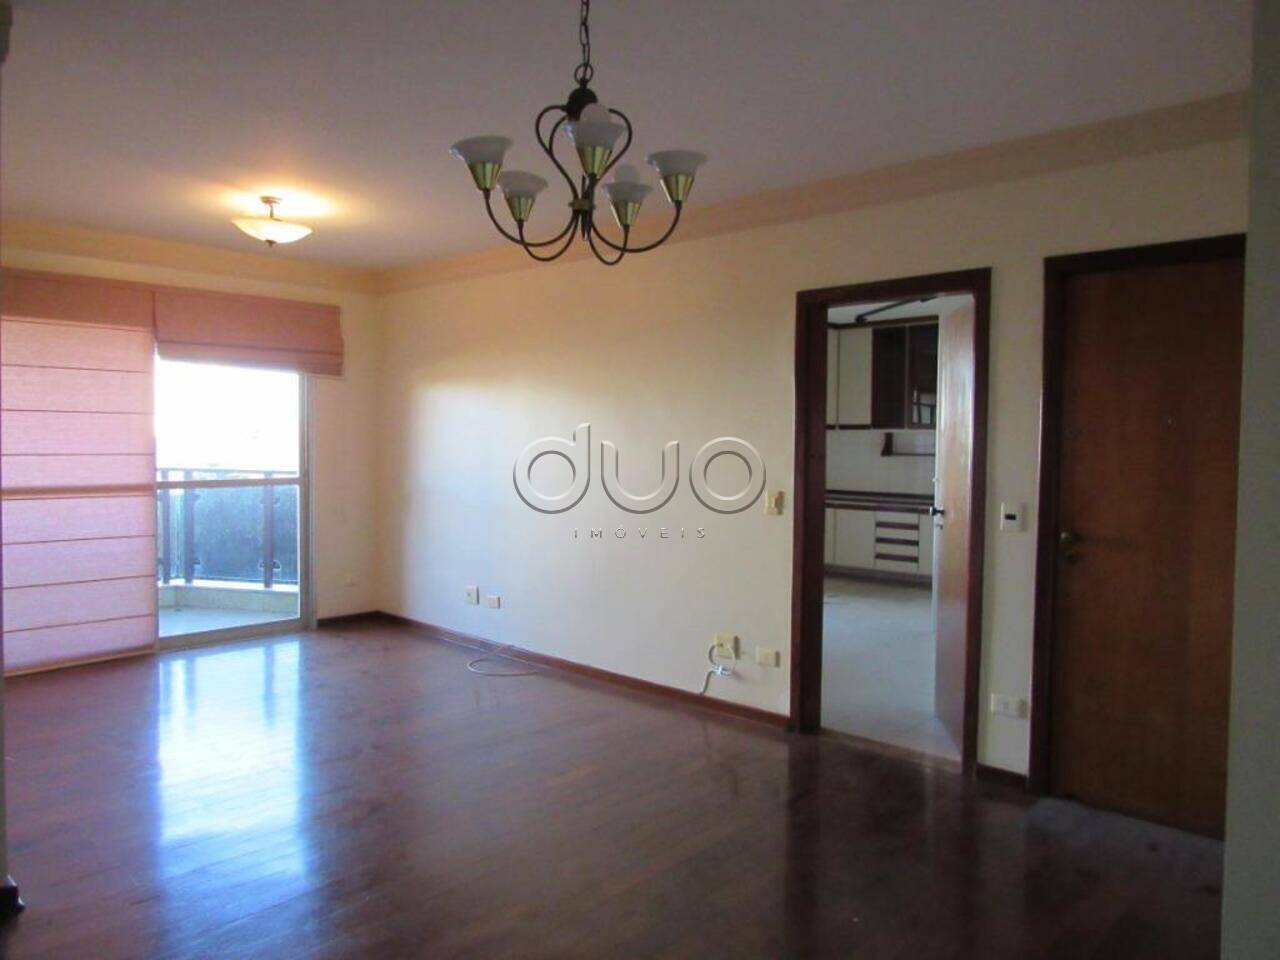 Apartamento com 3 dormitórios à venda, 127 m² por R$ 490.000 - Paulista - Piracicaba/SP